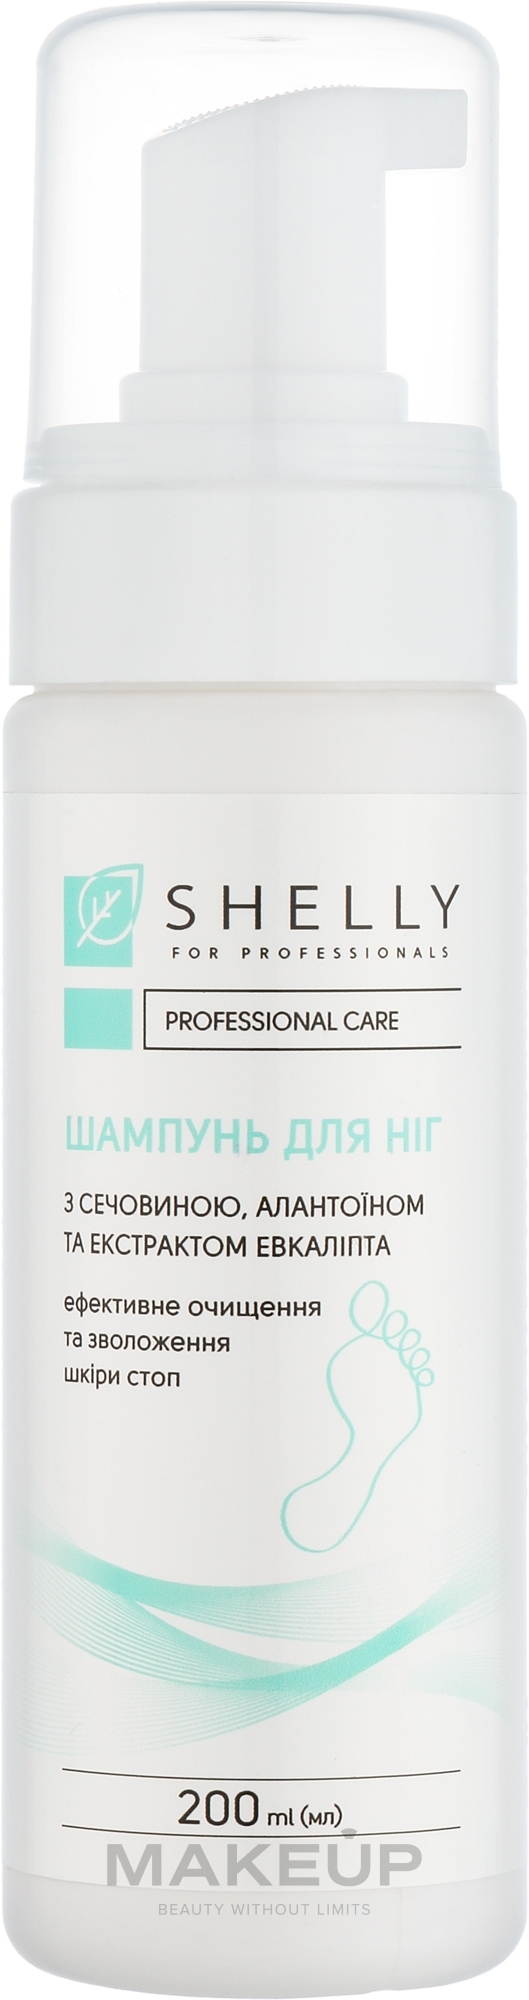 Шампунь-піна для ніг з сечовиною, алантоїном та екстрактом евкаліпта - Shelly Professional Care — фото 200ml